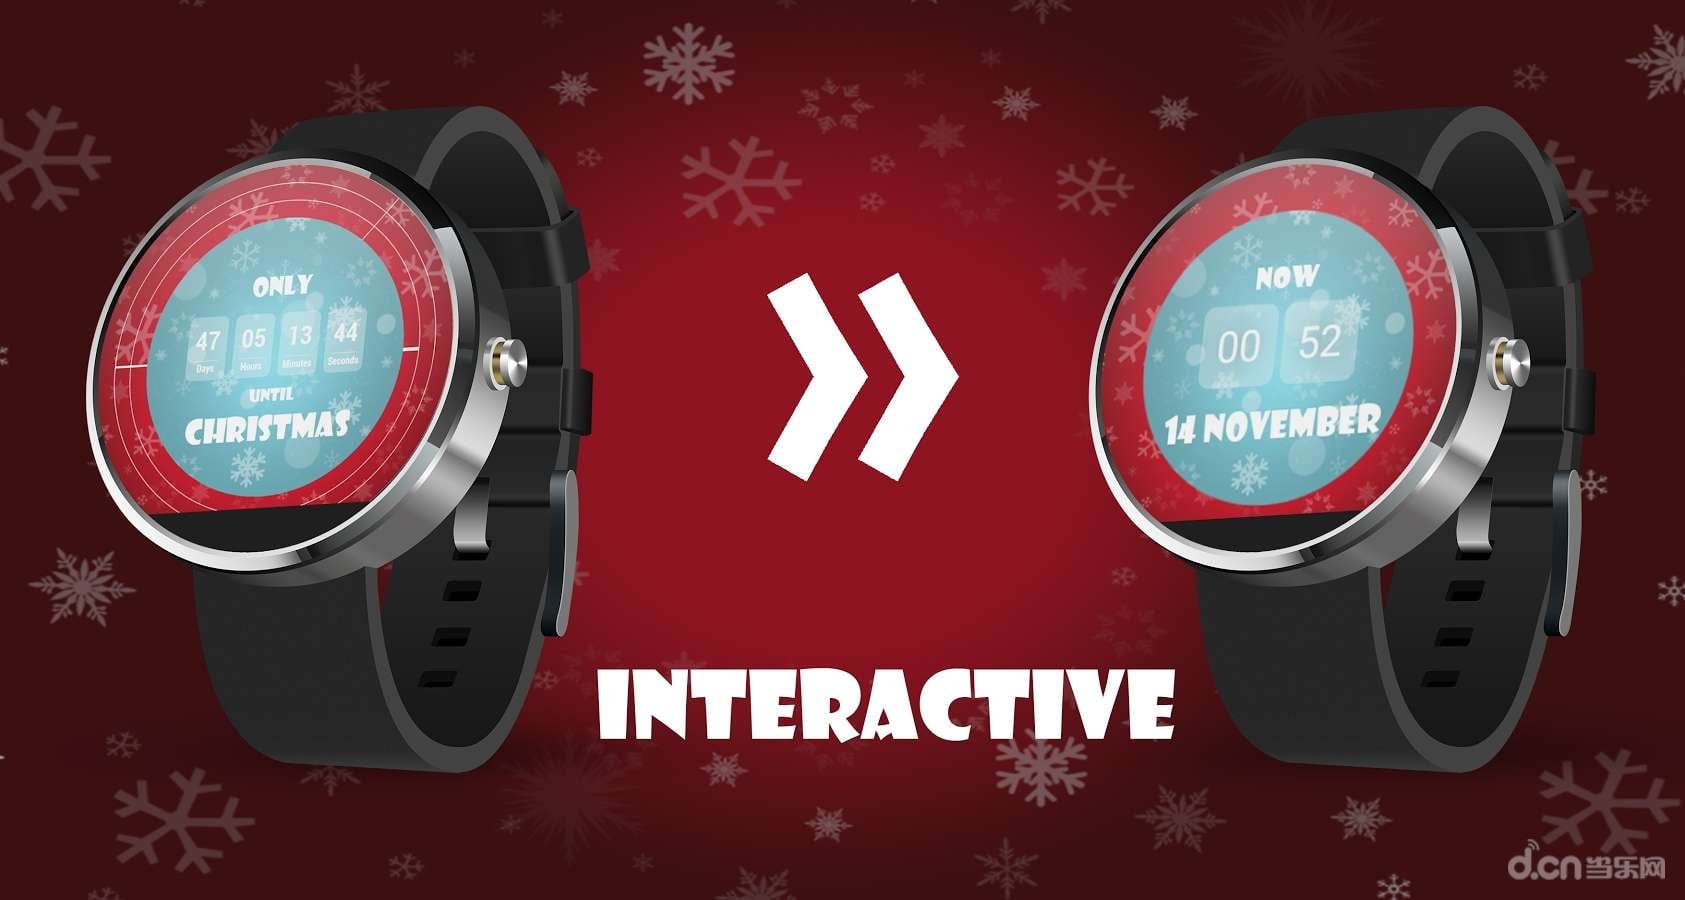 互动圣诞节倒计时表盘:Christmas Countdown Interactive Watch Face截图4